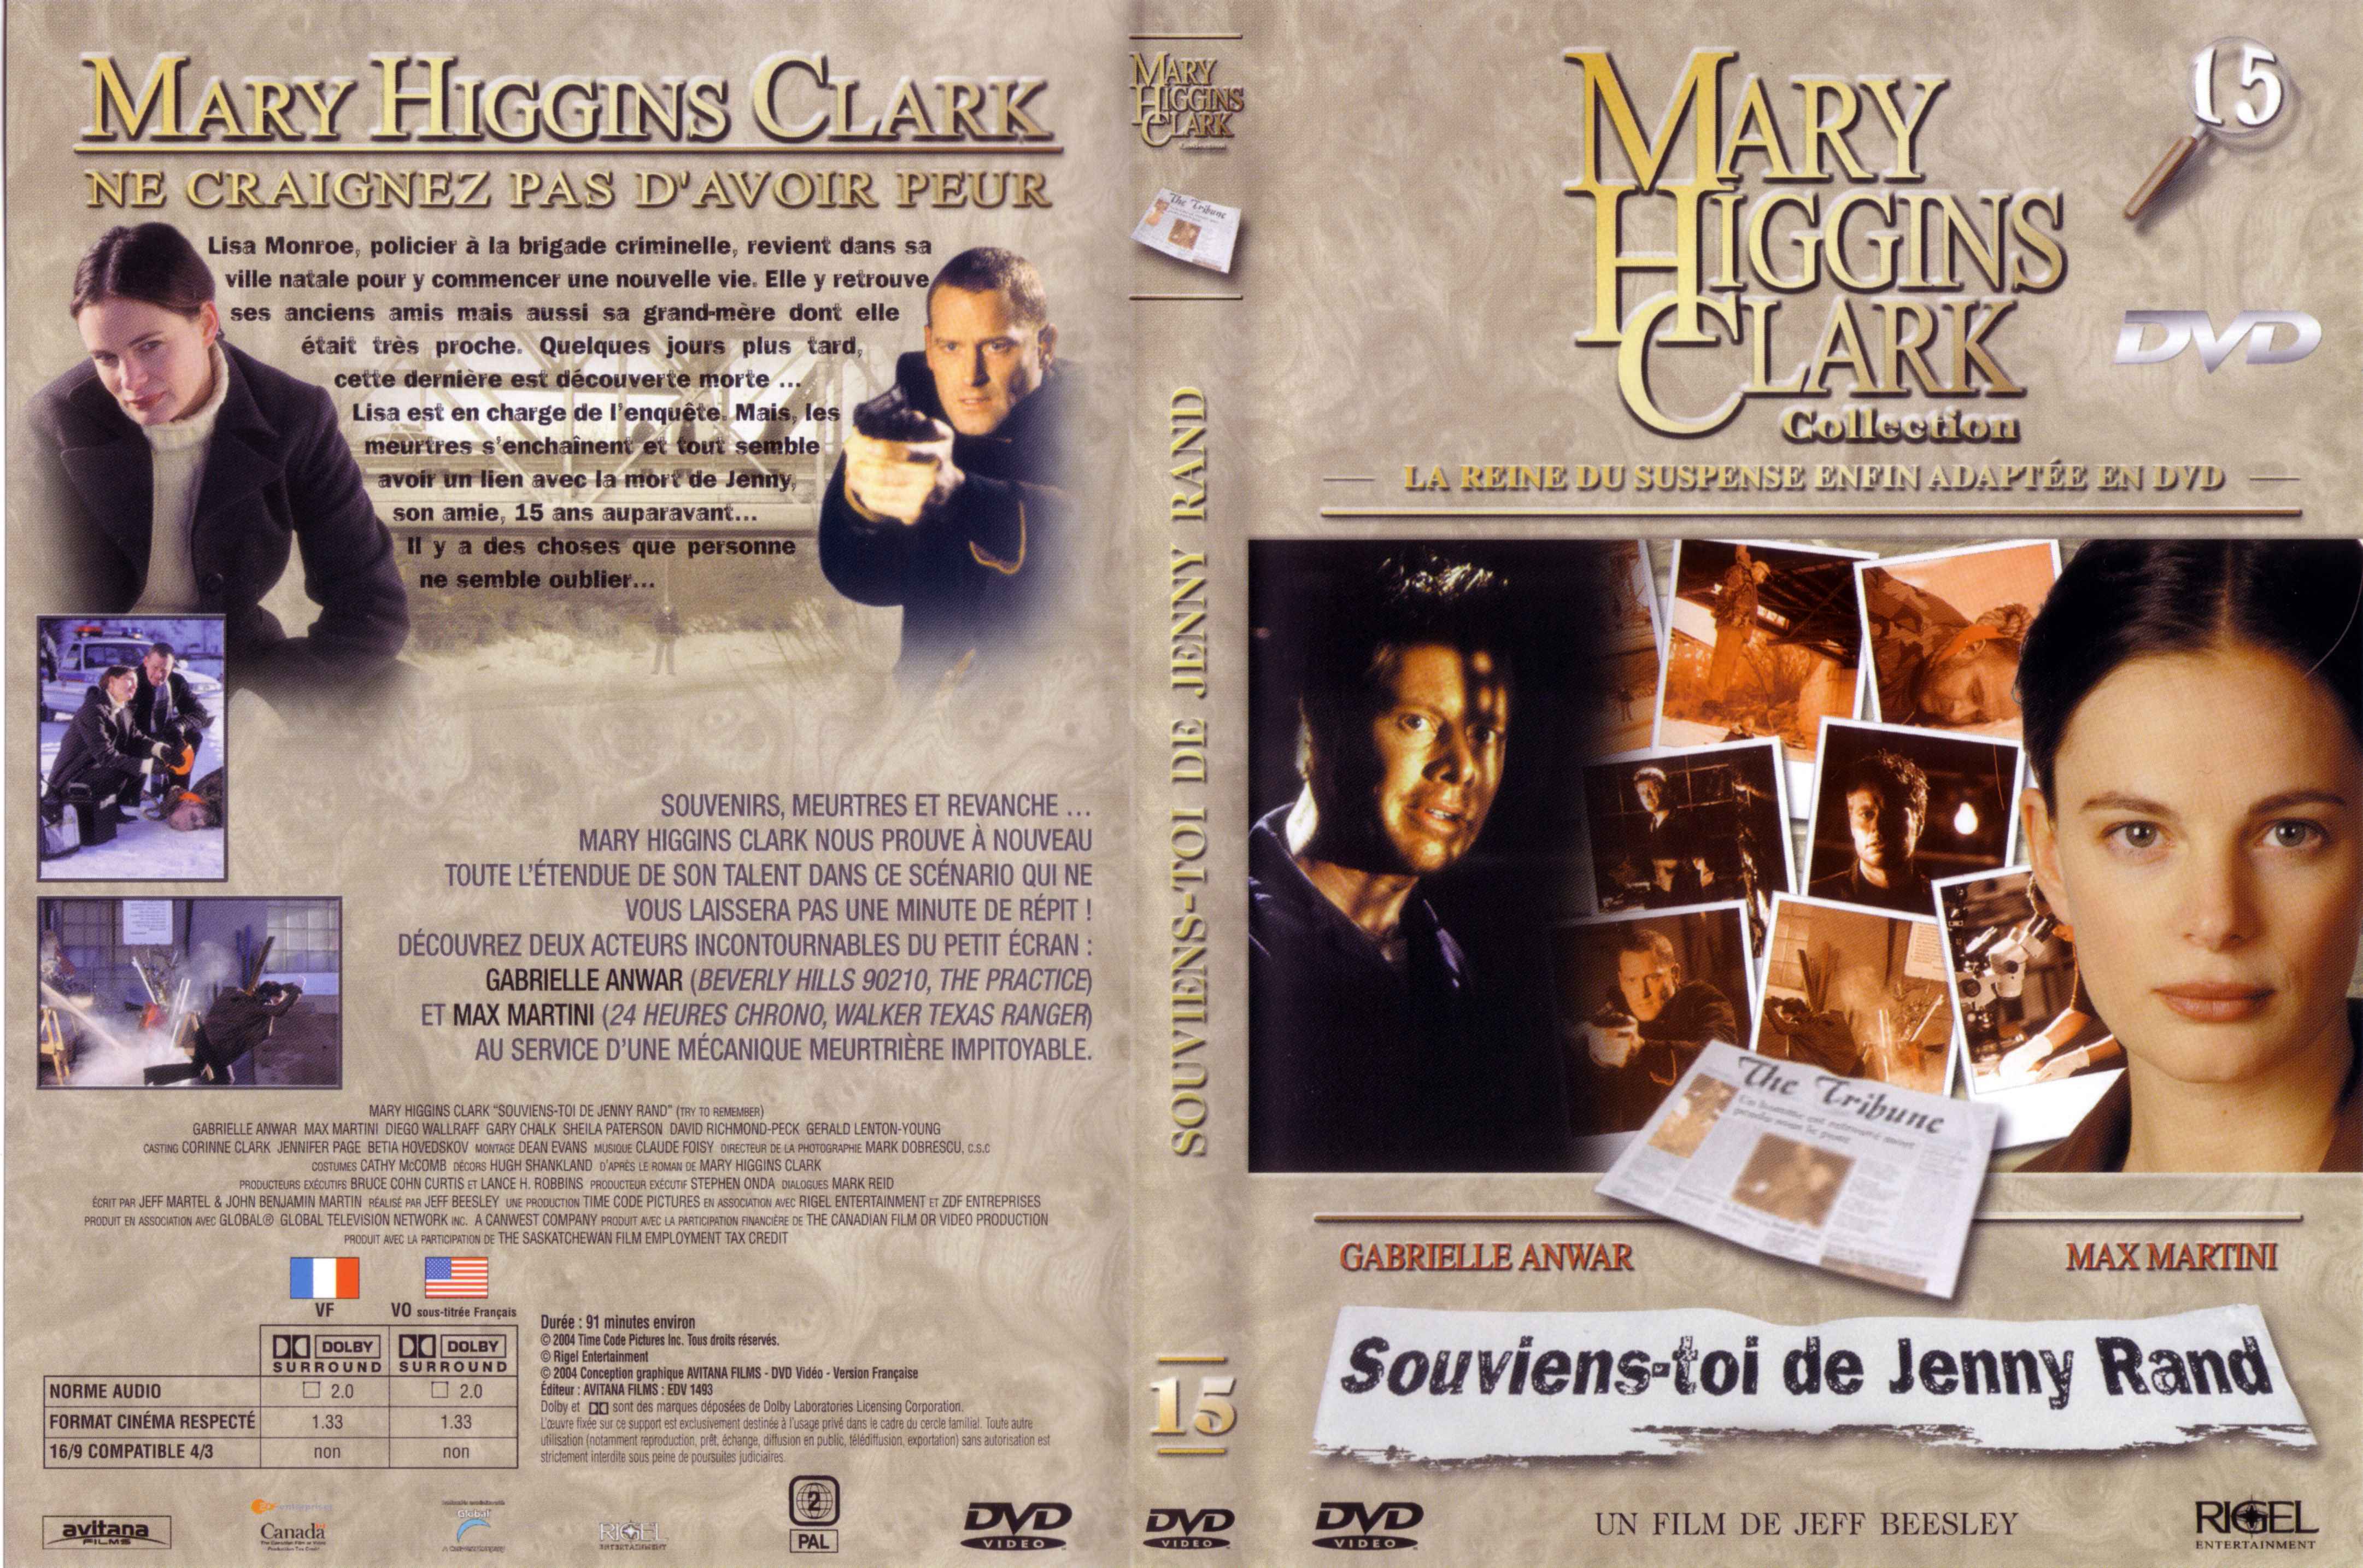 Jaquette DVD de Mary Higgins Clark vol 15 - Souviens toi de Jenny Rand - Cinéma Passion4323 x 2869